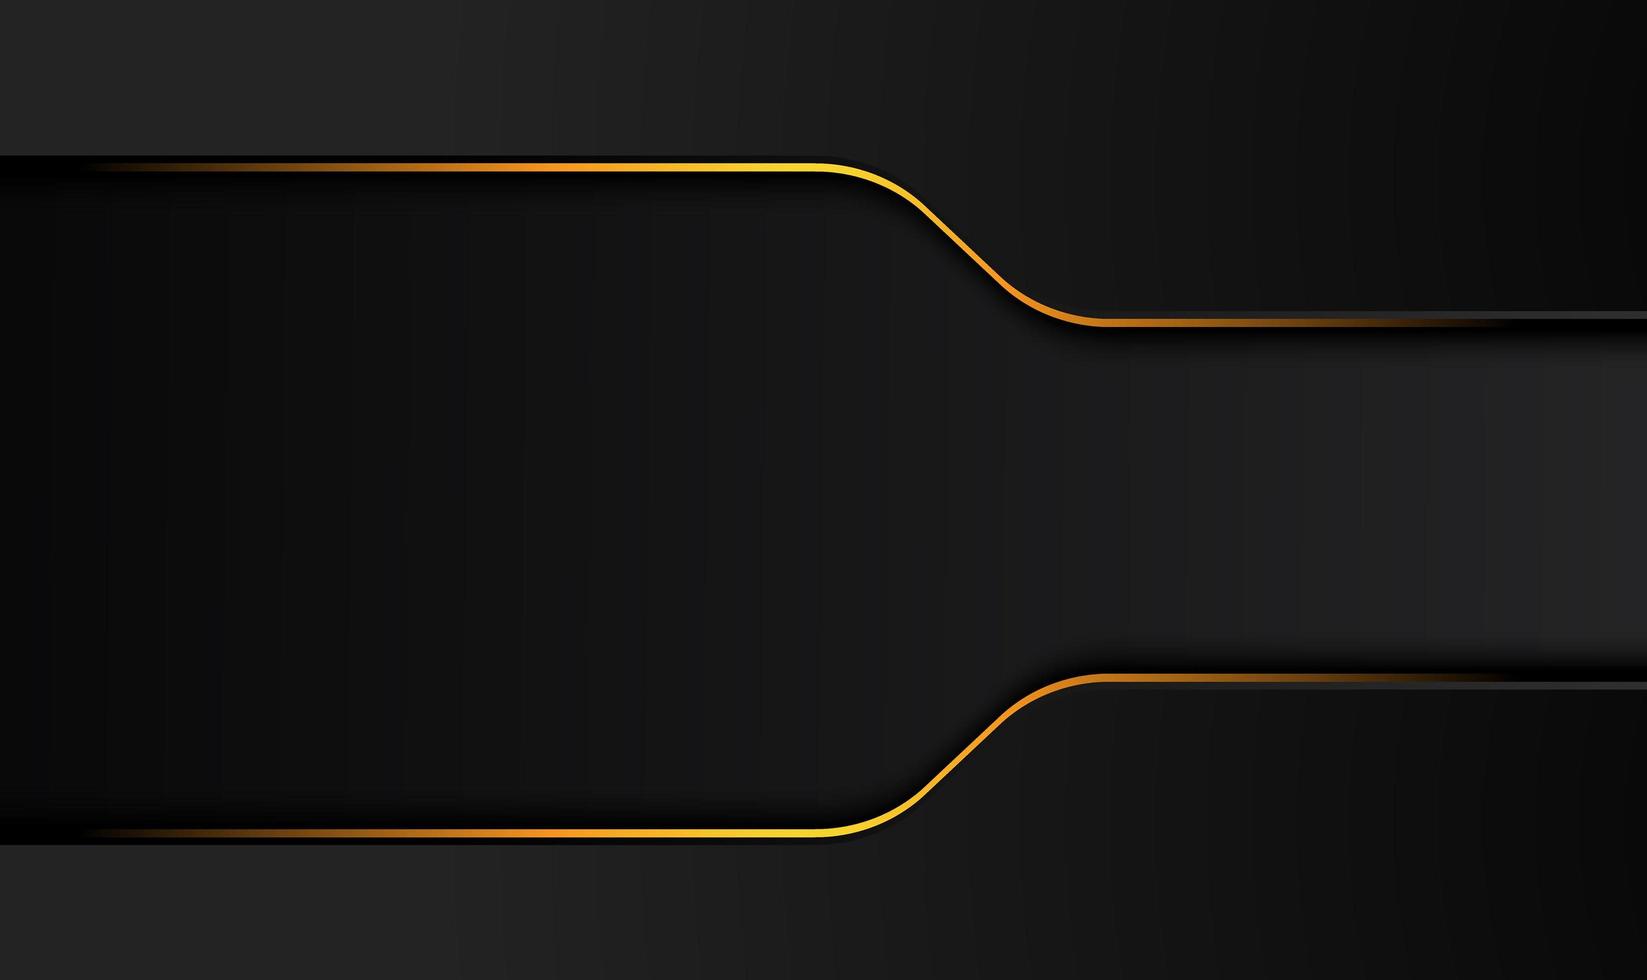 Tech-schwarzer Hintergrund mit orange-gelben Kontraststreifen. abstraktes Vektorgrafik-Broschürendesign vektor